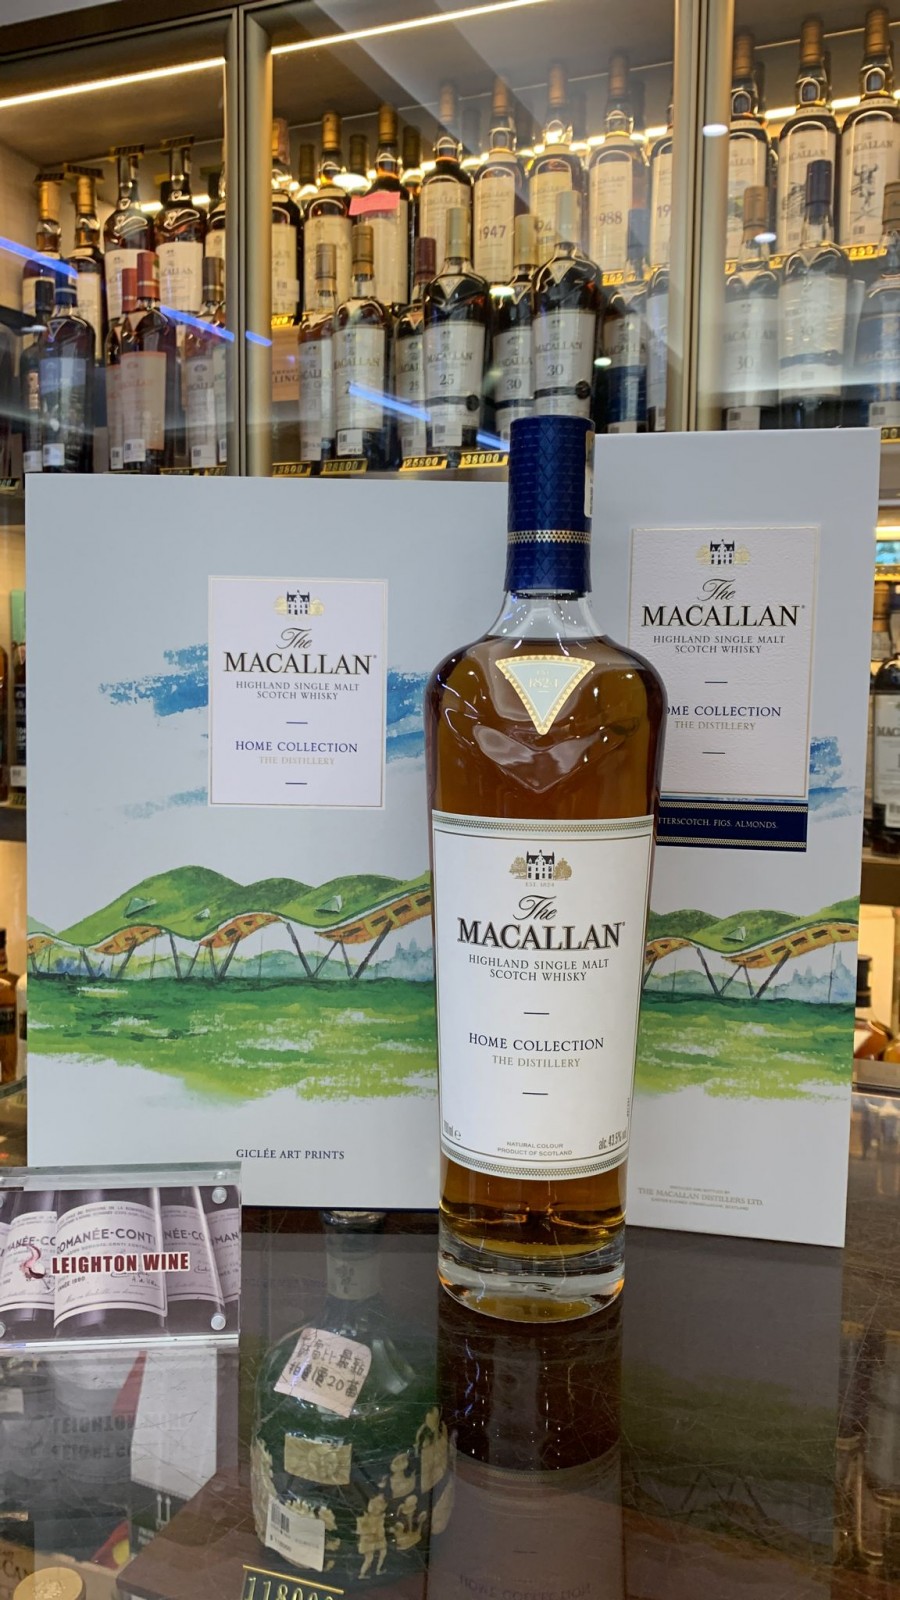 Macallan Home Collection – The Distillery